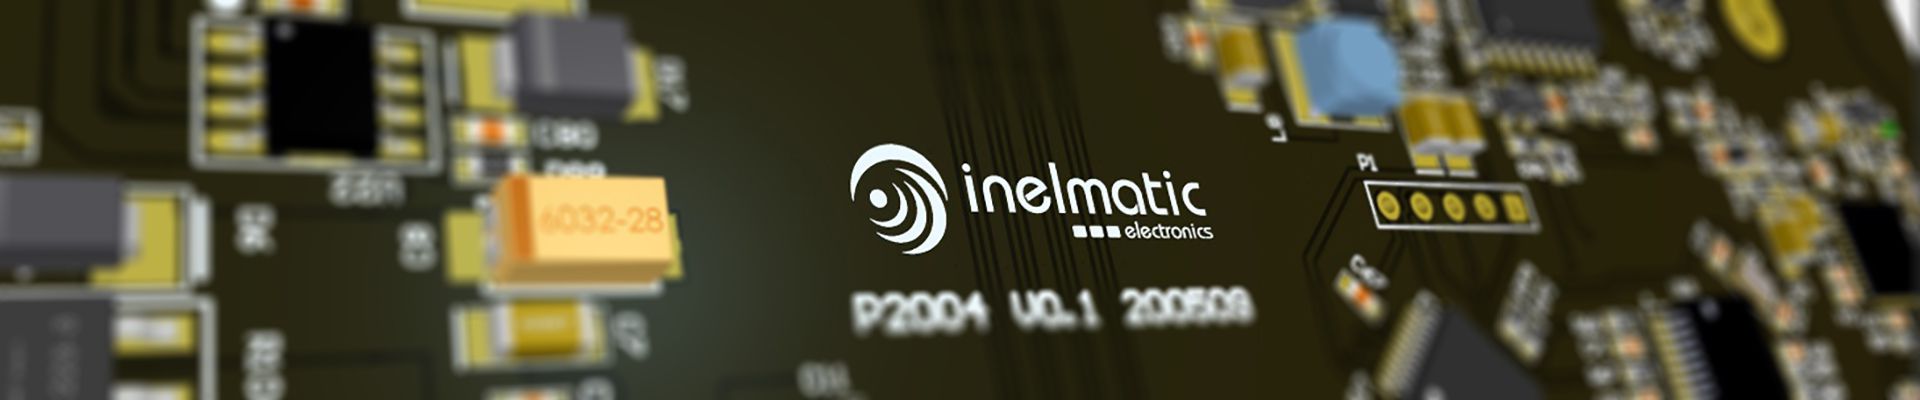 Inelmatic Electronic department - Inelmatic